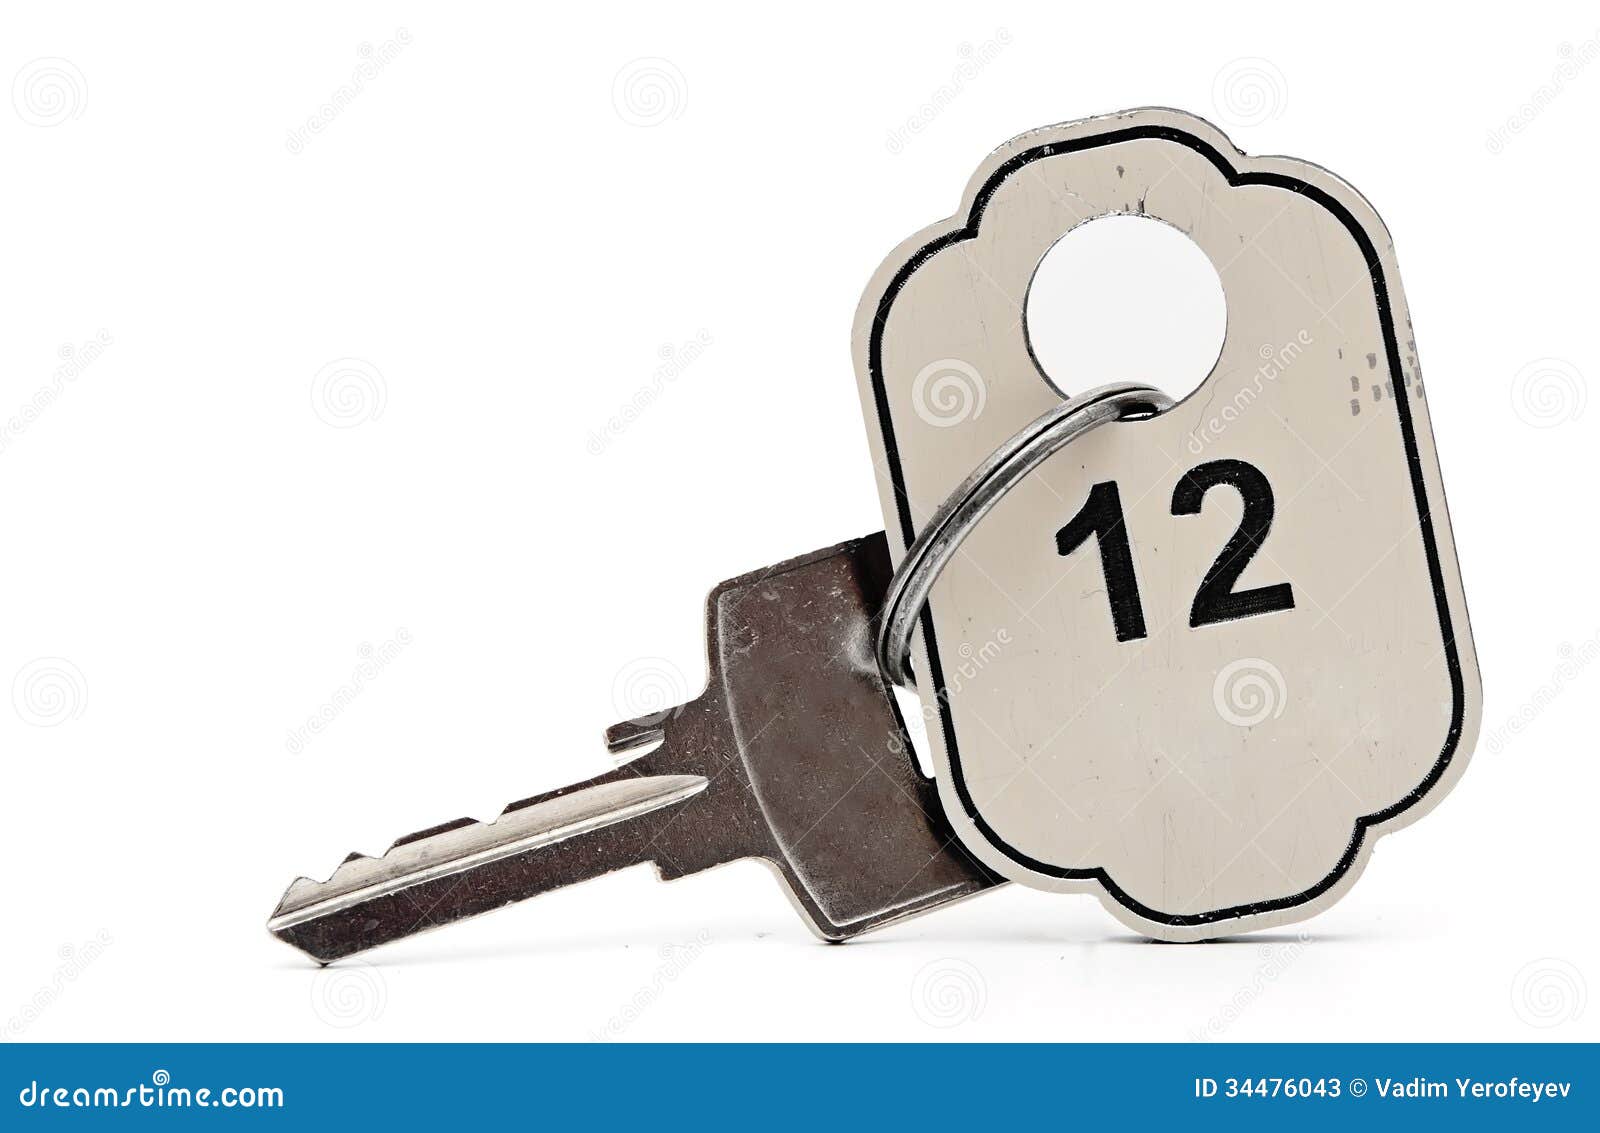 Ключ от комнаты охраны. Ключ от номера. Ключ с номером. Ключи от гостиничного номера. Ключ от номера в отеле.